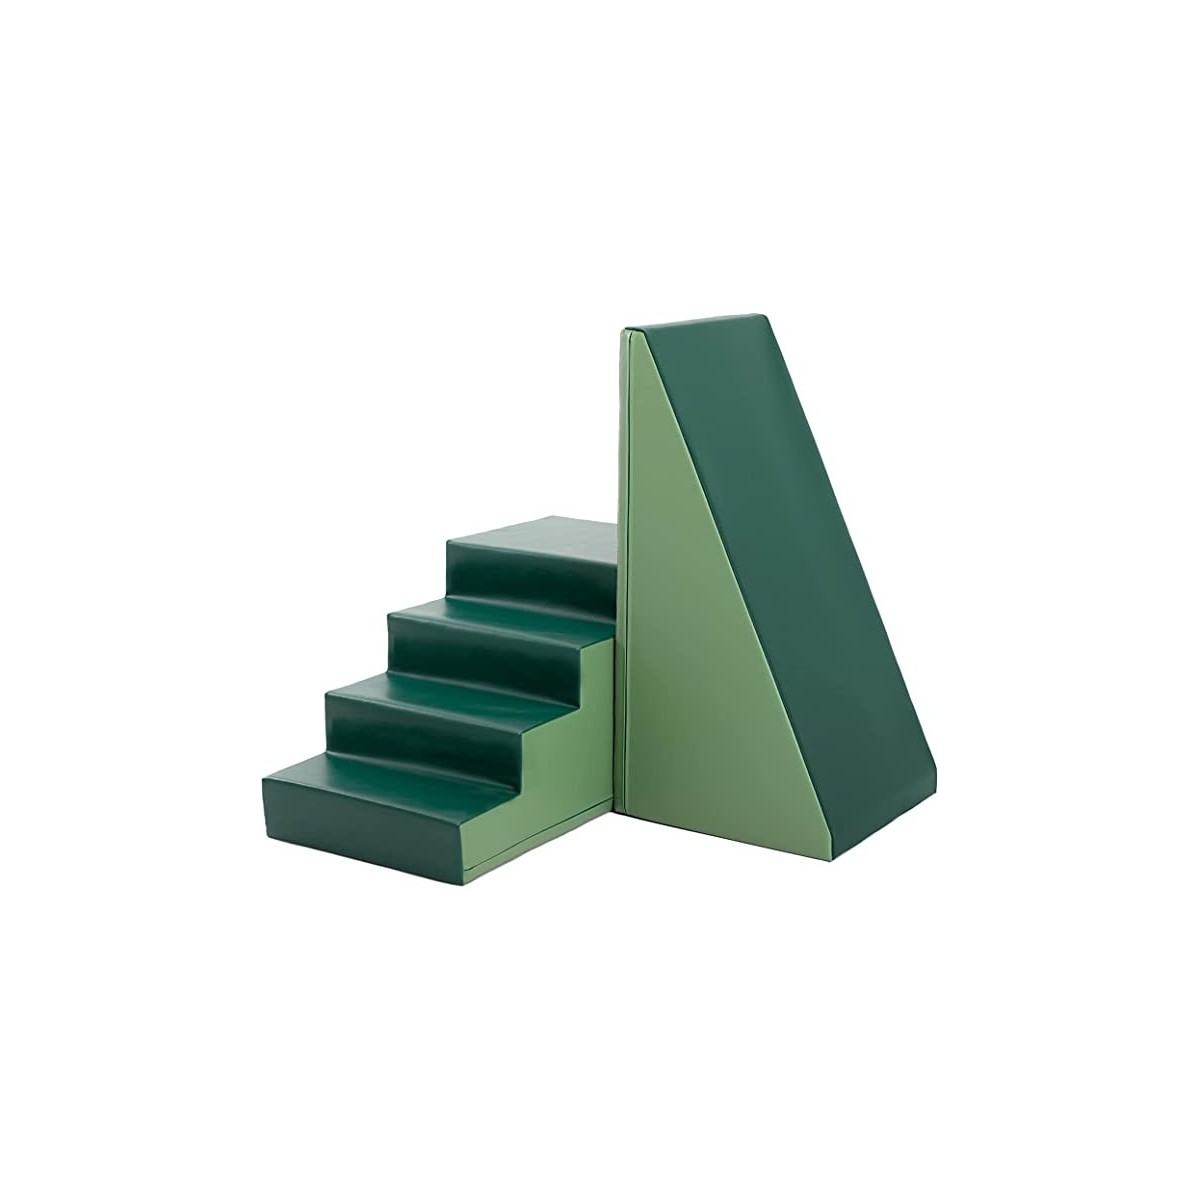 Escalier et pente de motricité vert sapin et kaki - 1 - Kit de modules de motricité de couleurs vert sapin et kaki, escalier et 